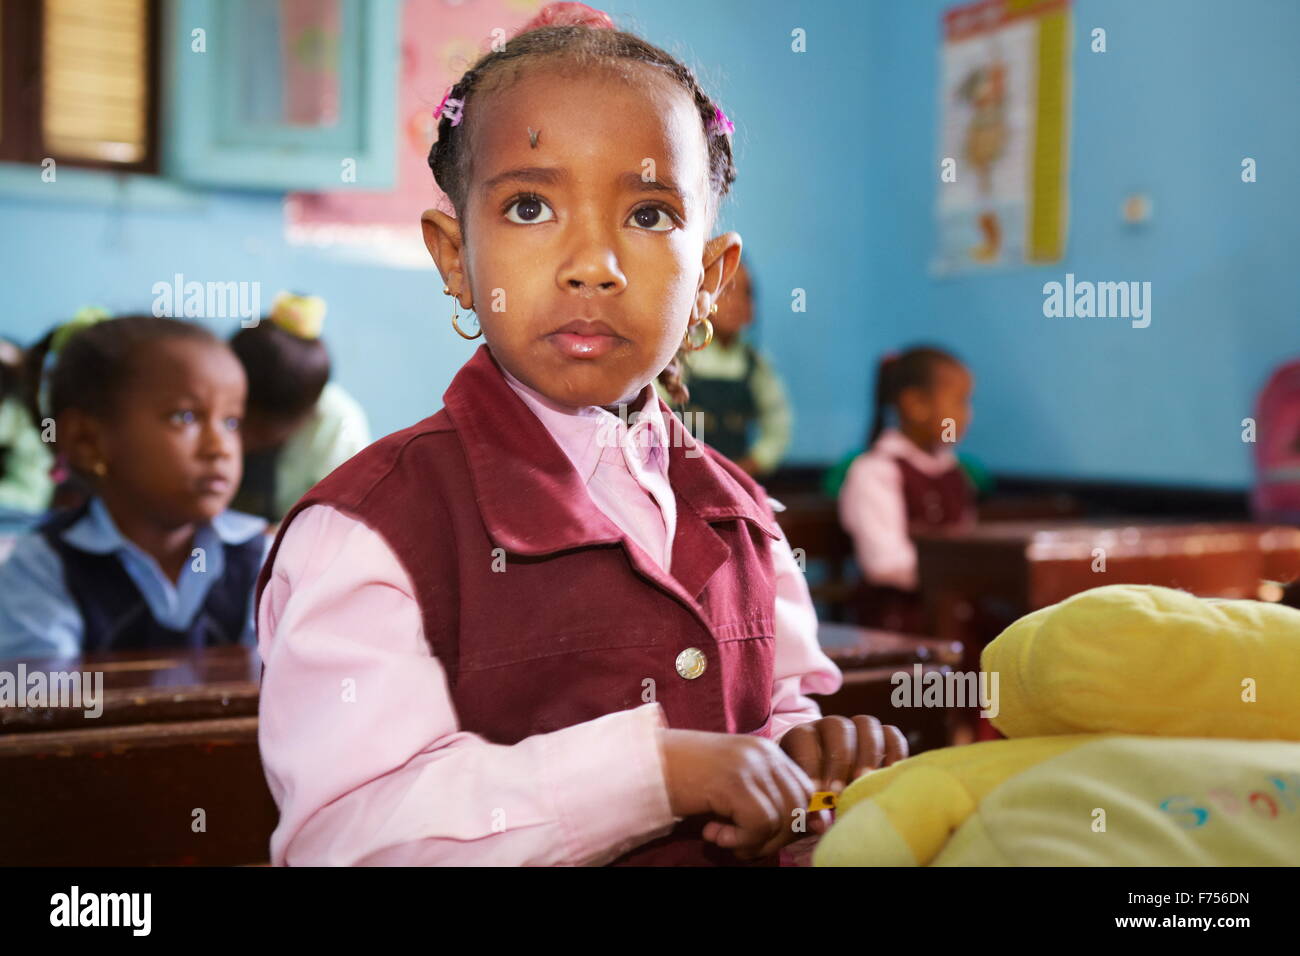 Egyptian child - Nubian children (girl) in the school, portrait, Egypt Stock Photo